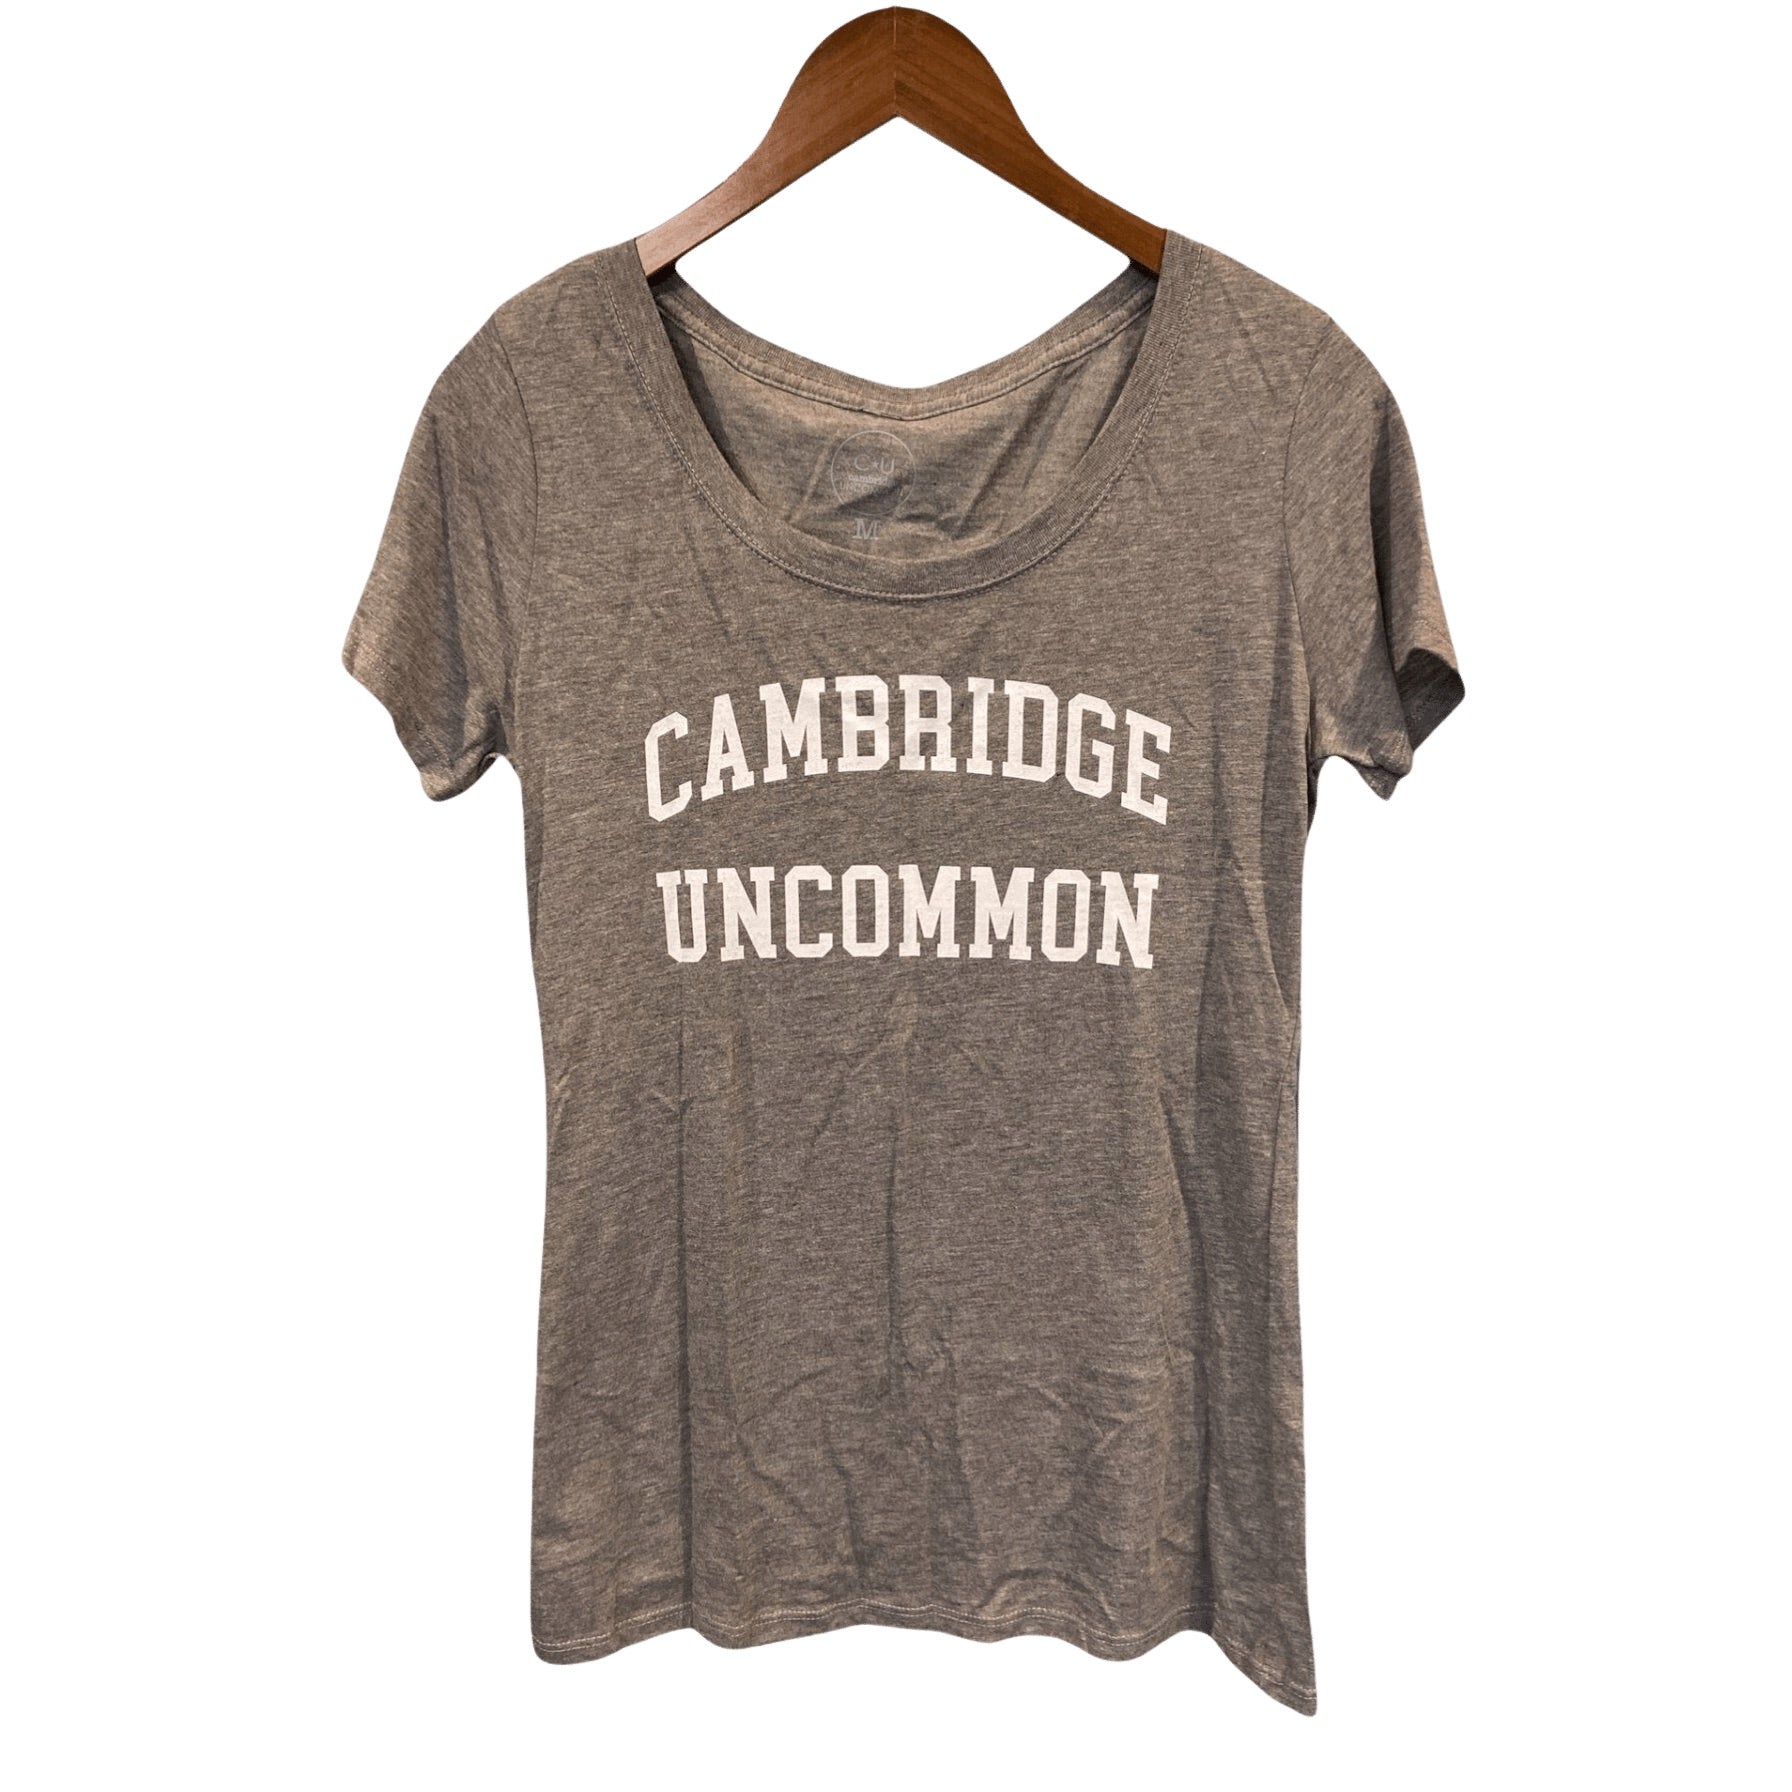 Cambridge Uncommon Women's Tee | White Graphic